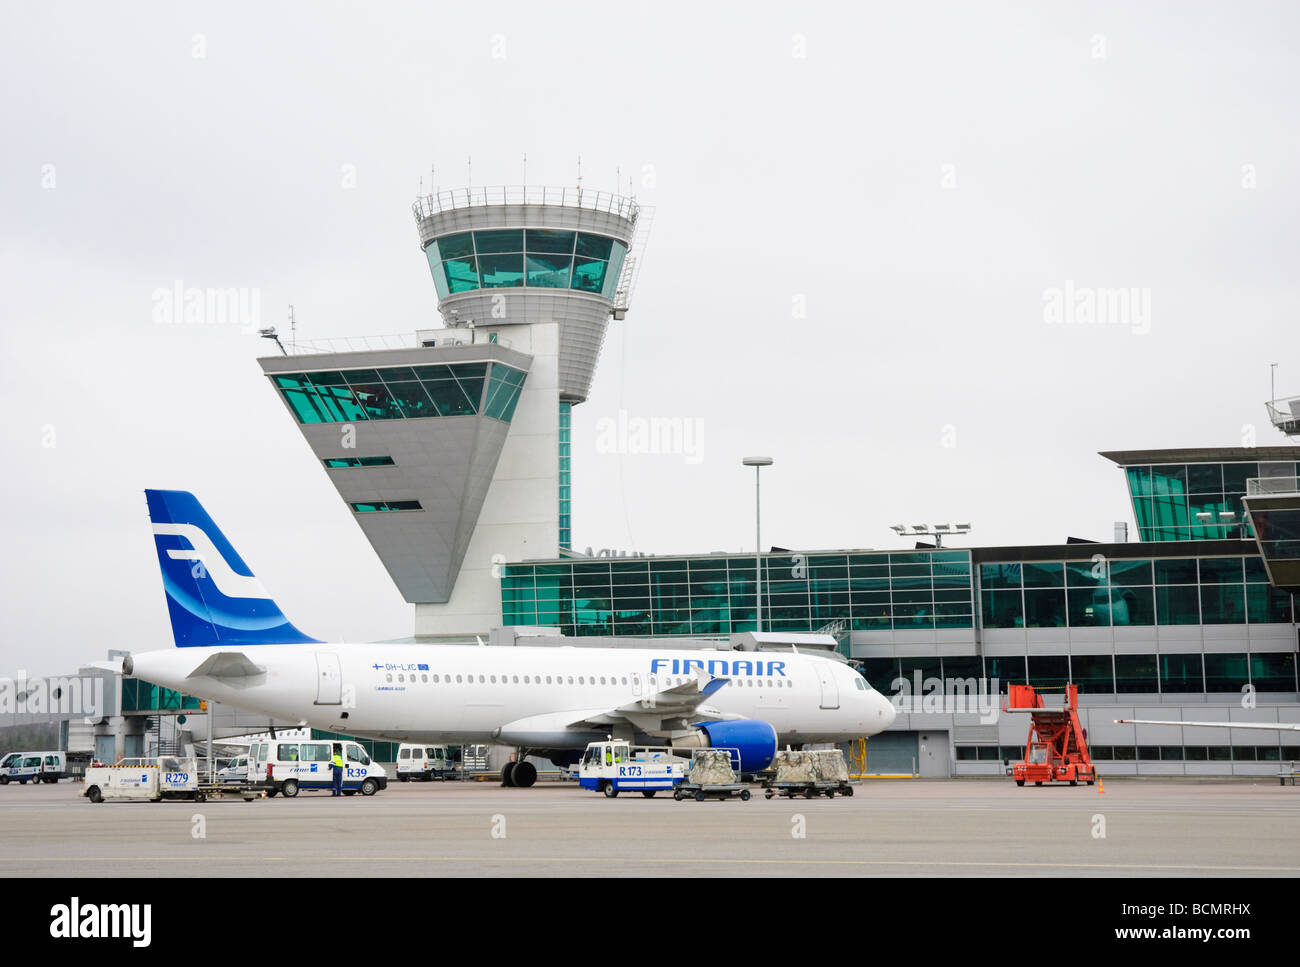 Torre de Control y el terminal 2 del aeropuerto de Helsinki Vantaa Intermational airside. Foto de stock